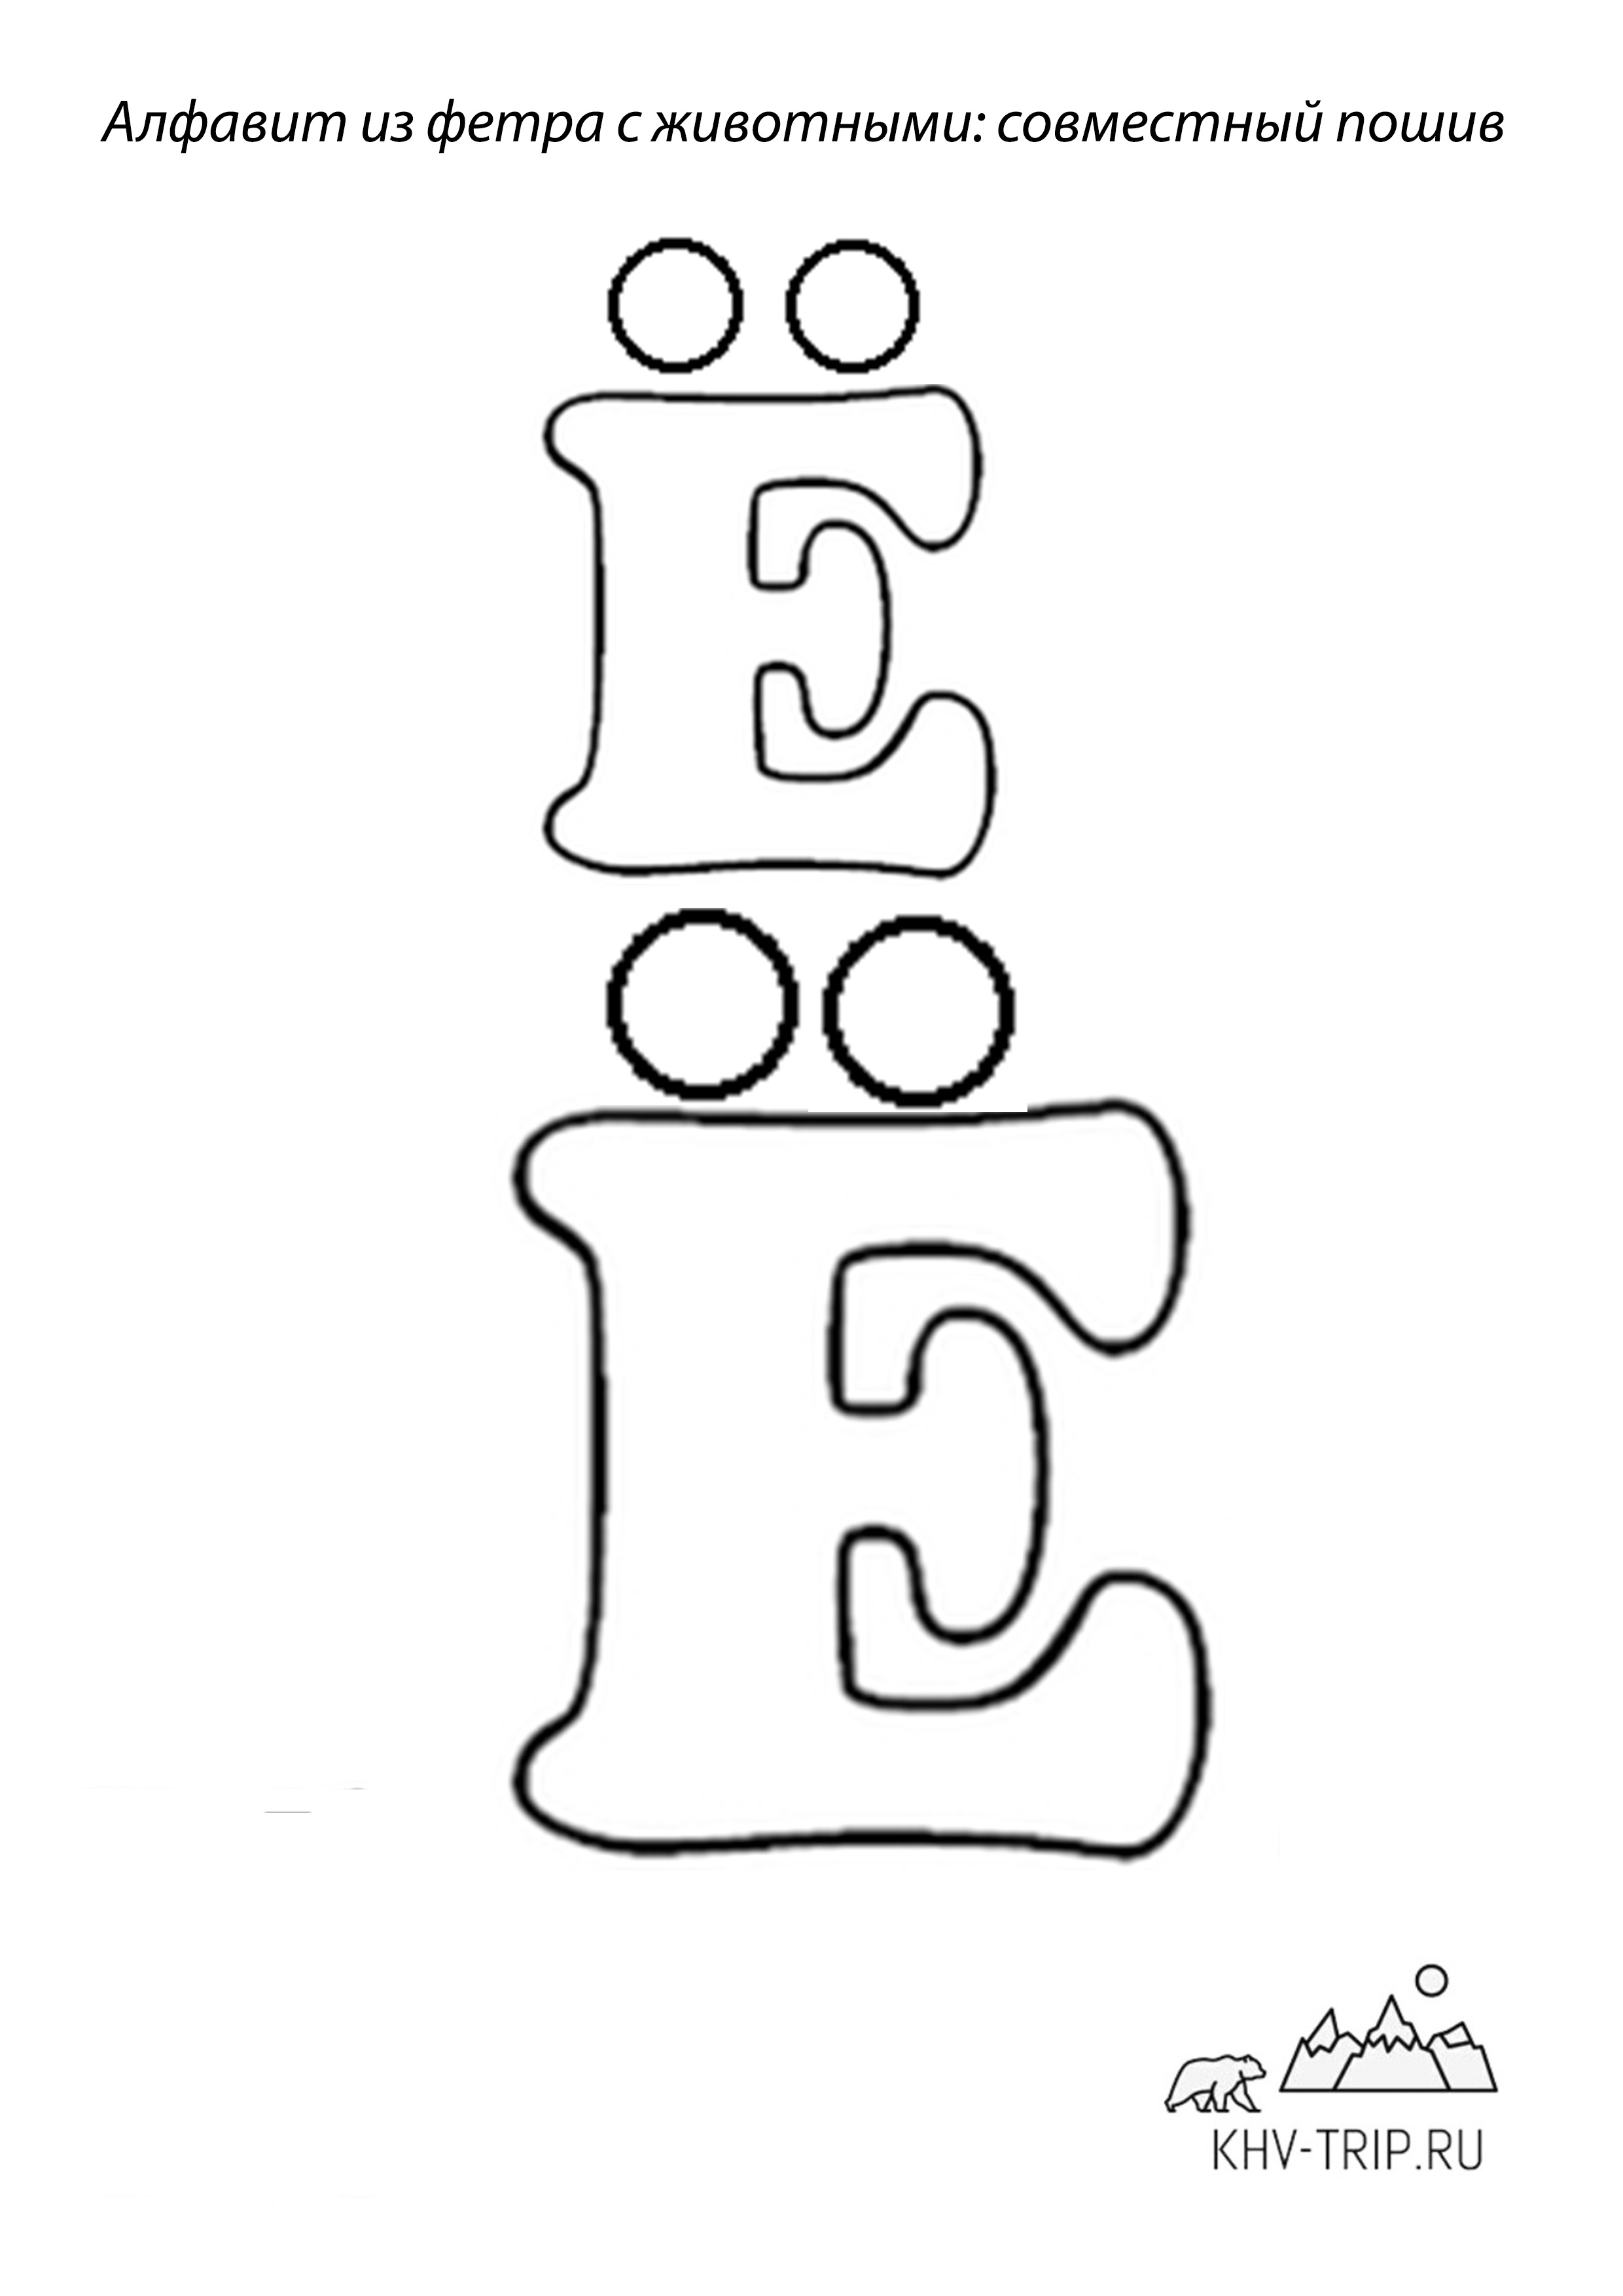 Алфавит из фетра (RU, UA, ENG)